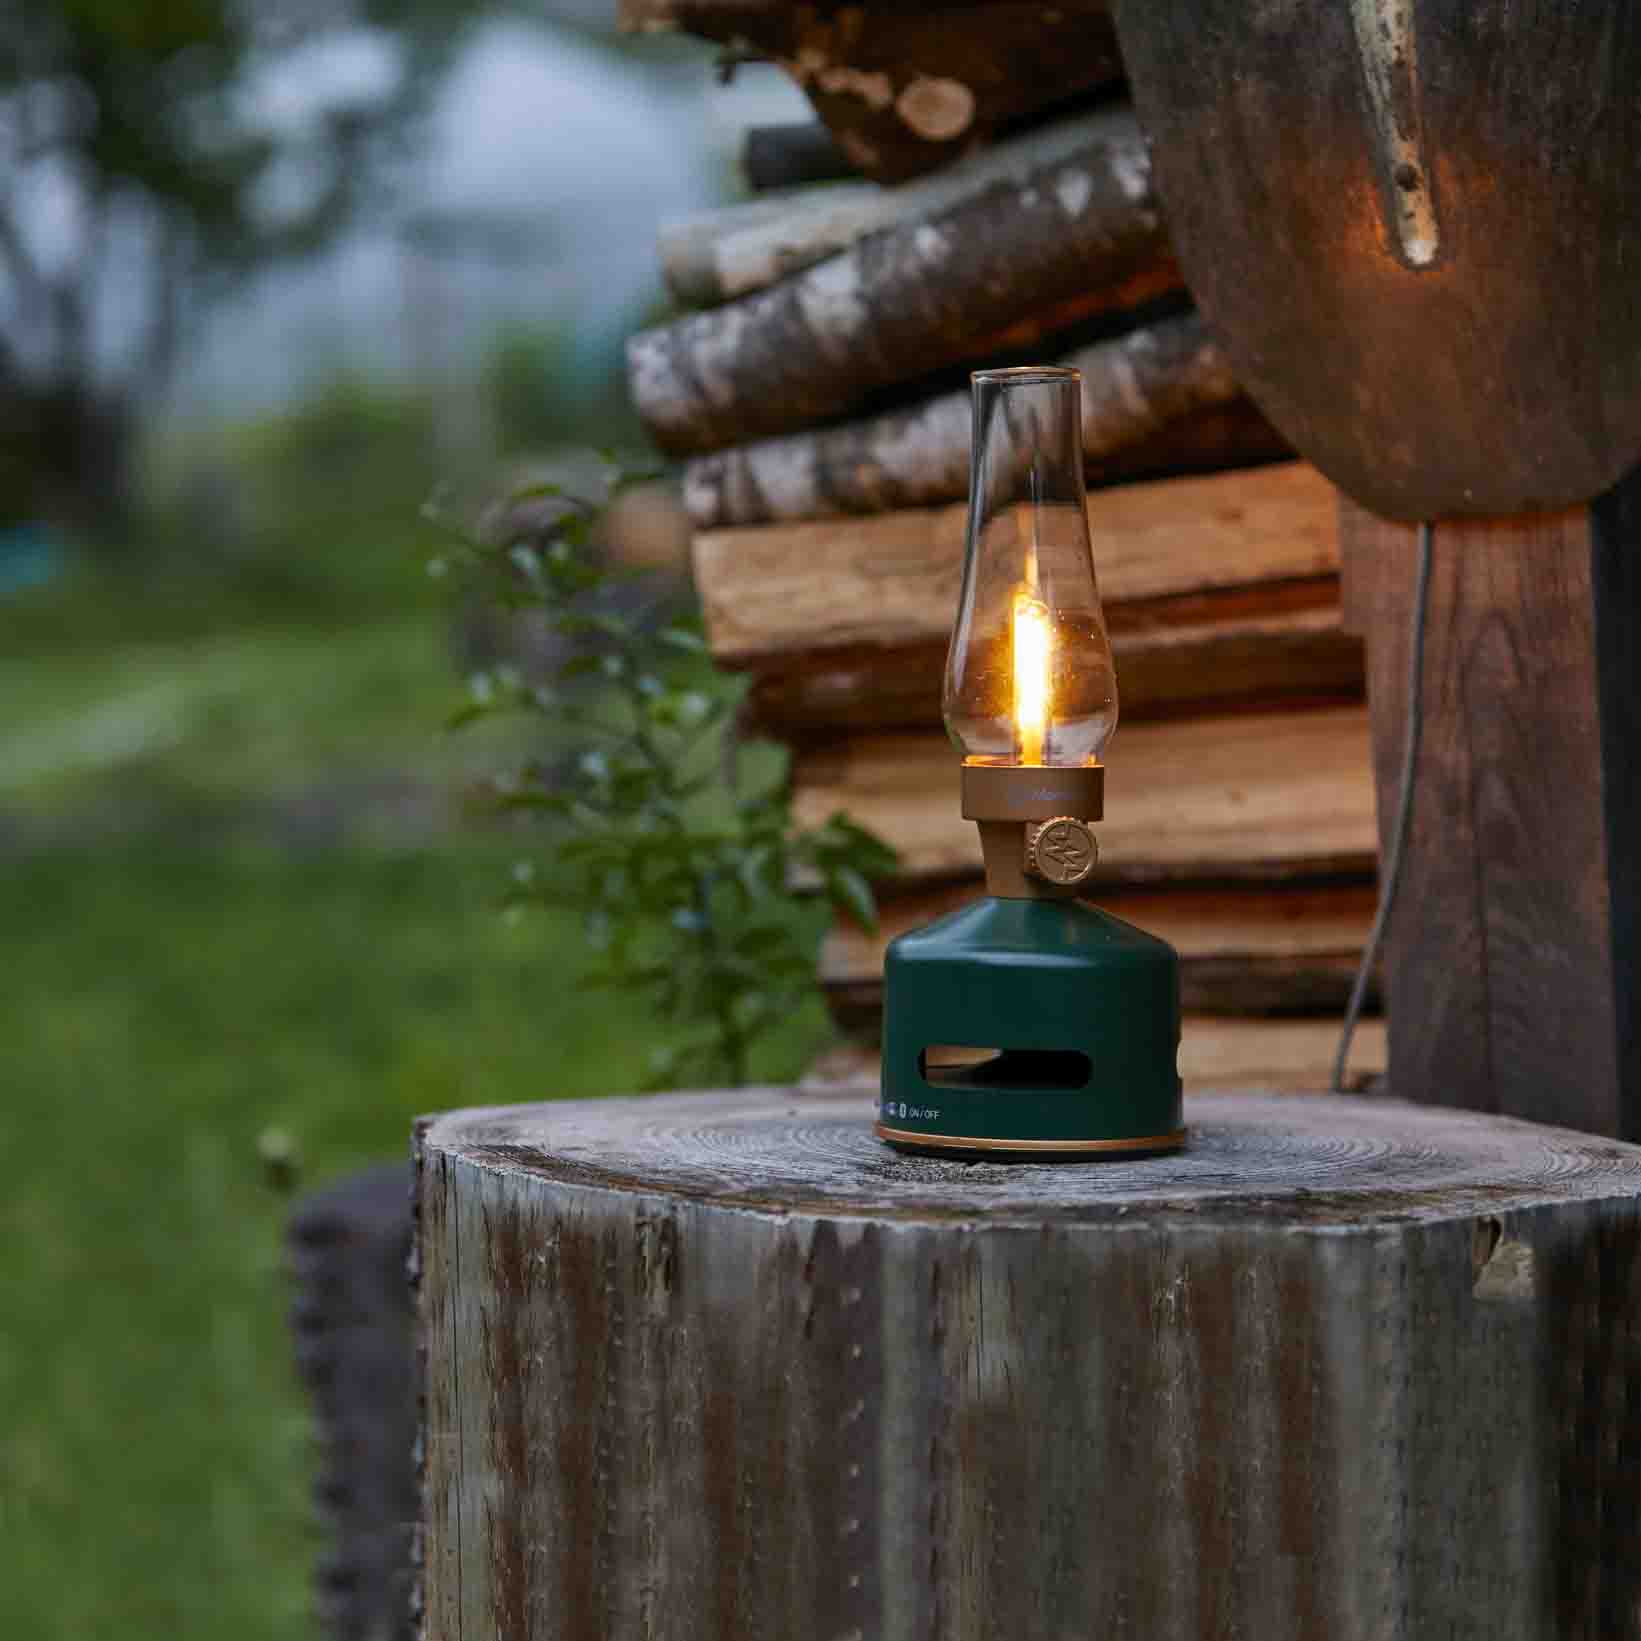 MoriMori LED Lantern & Bluetooth Speaker Original Green│Buitenverlichting Oplaadbaar│art. FLS-2101-DG│op houten blok in tuin met licht aan